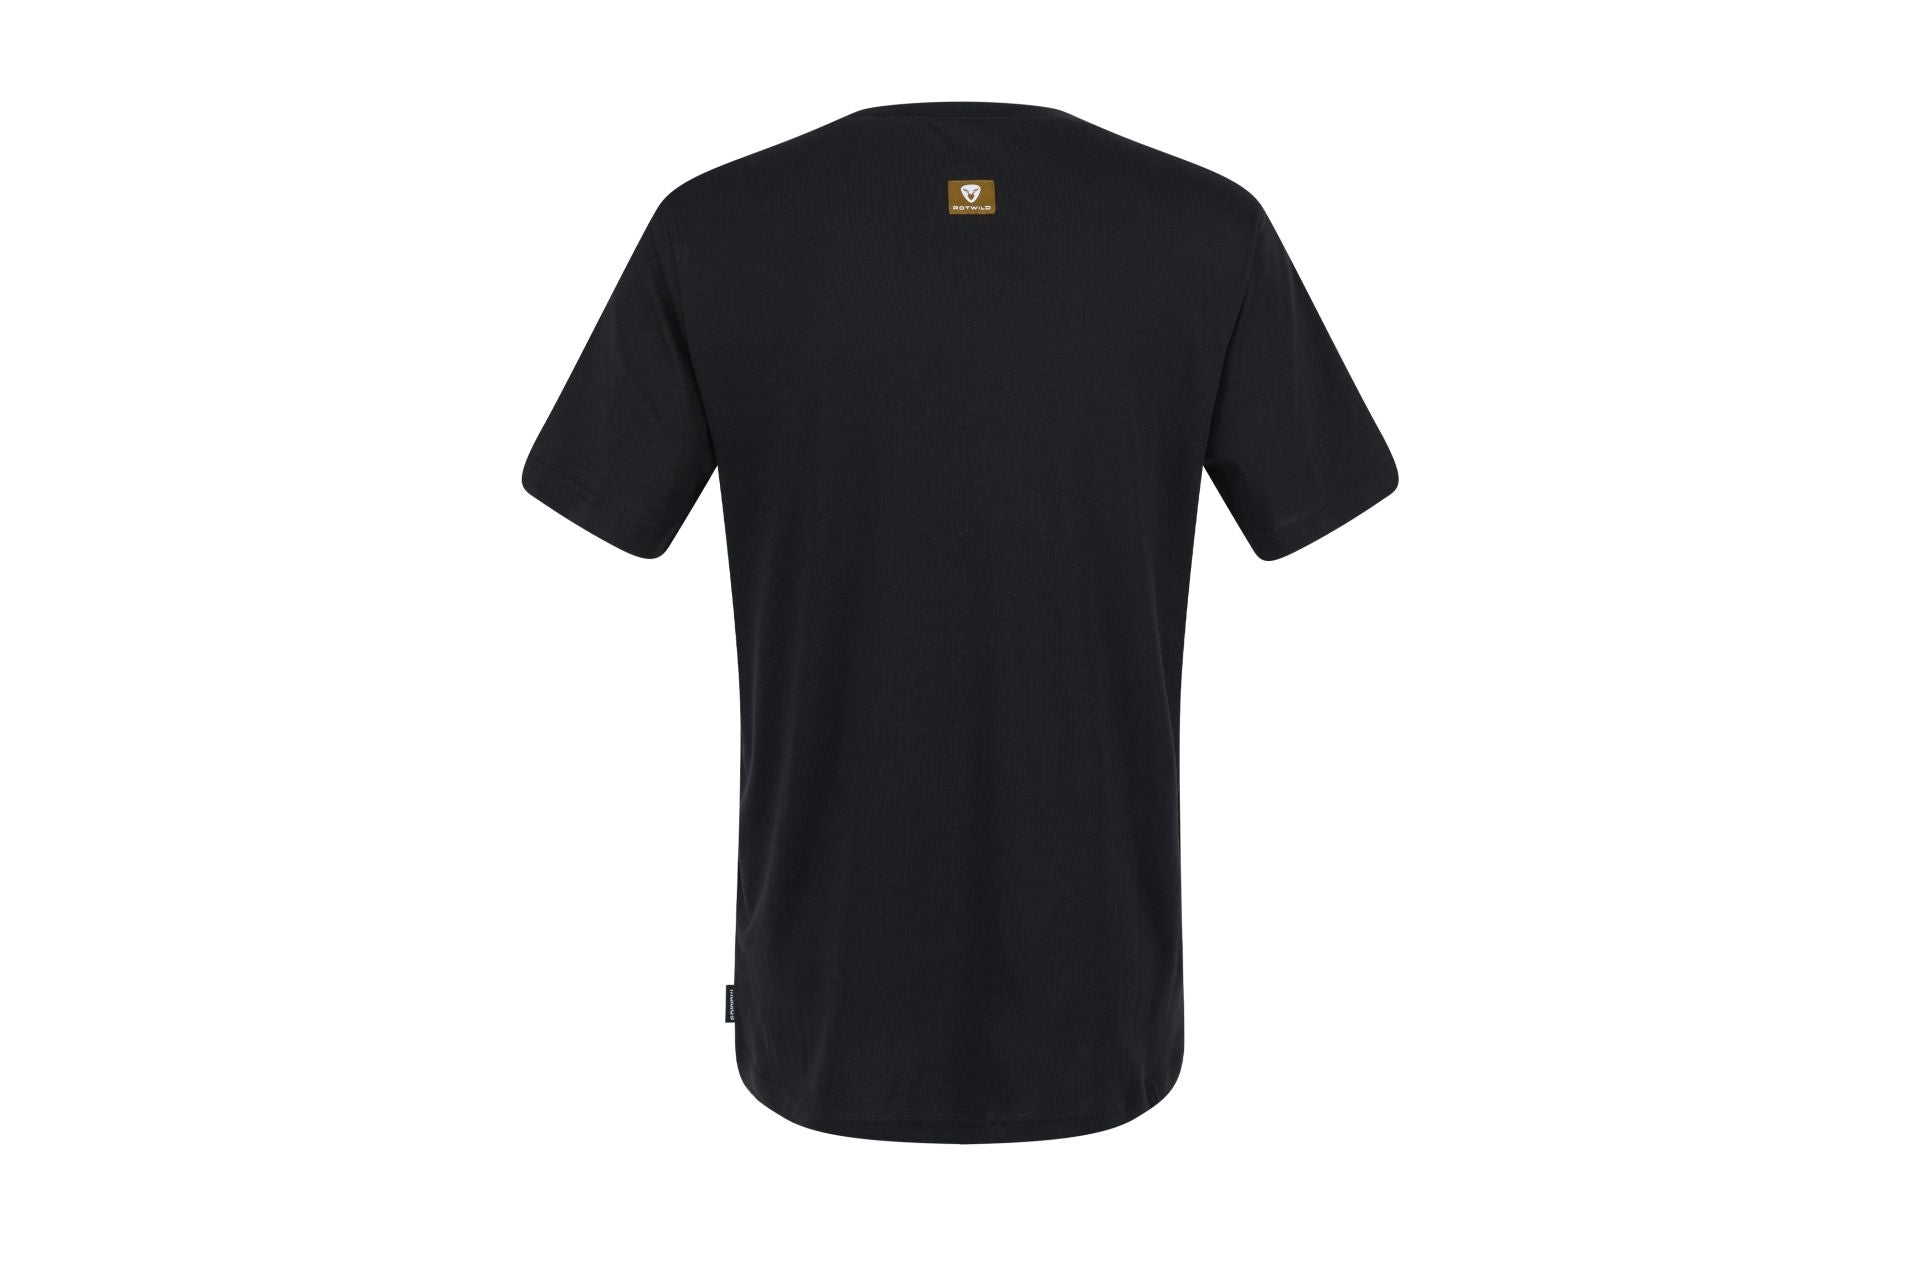 Rotwild T-Shirt Men / ILLERM.ROTWILD black